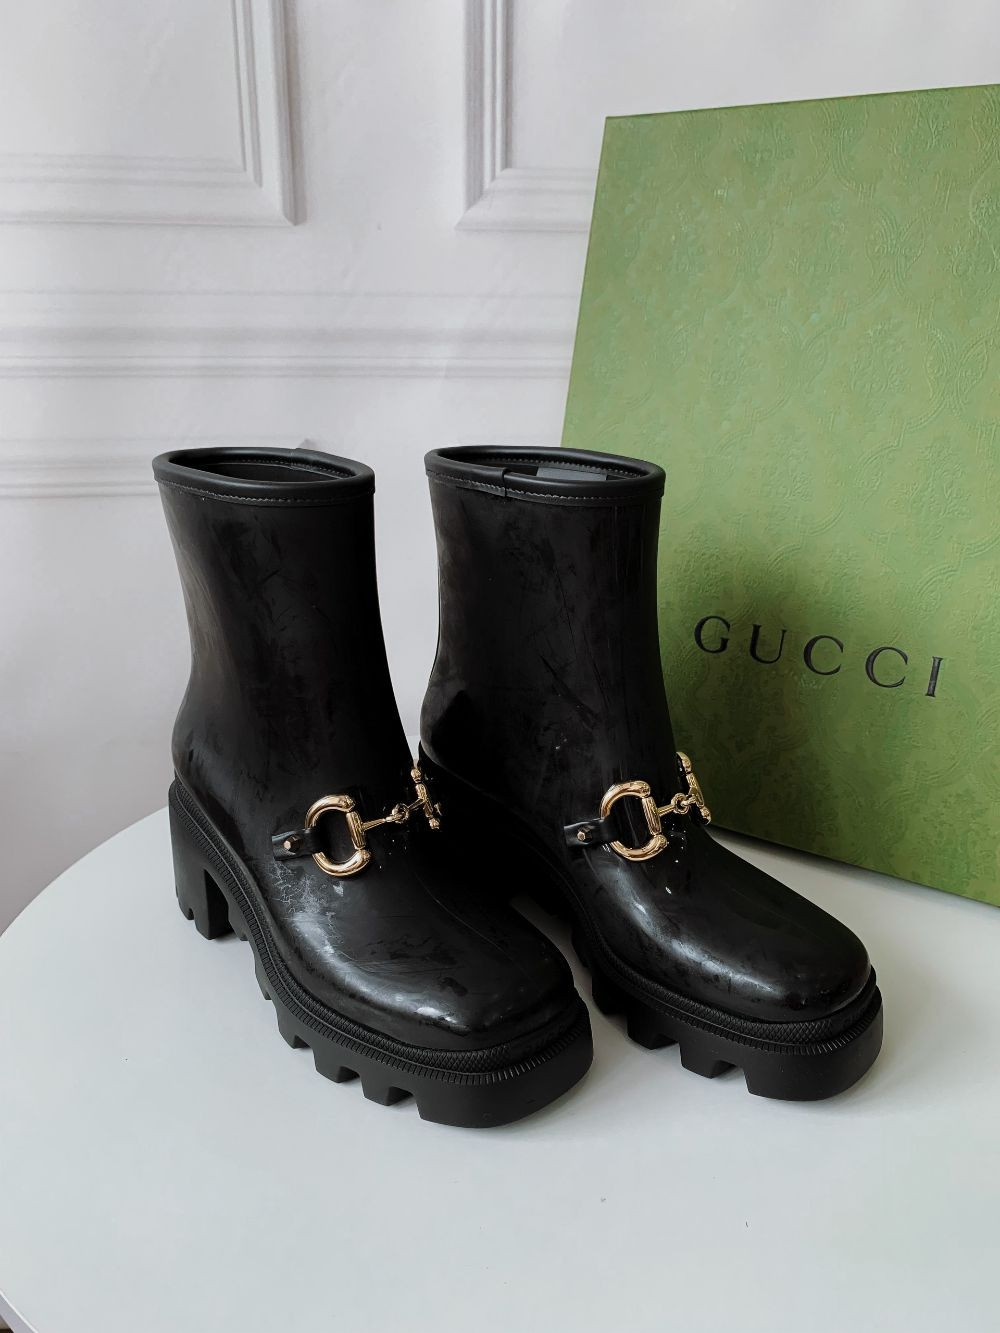 Boot Gucci cao 6cm